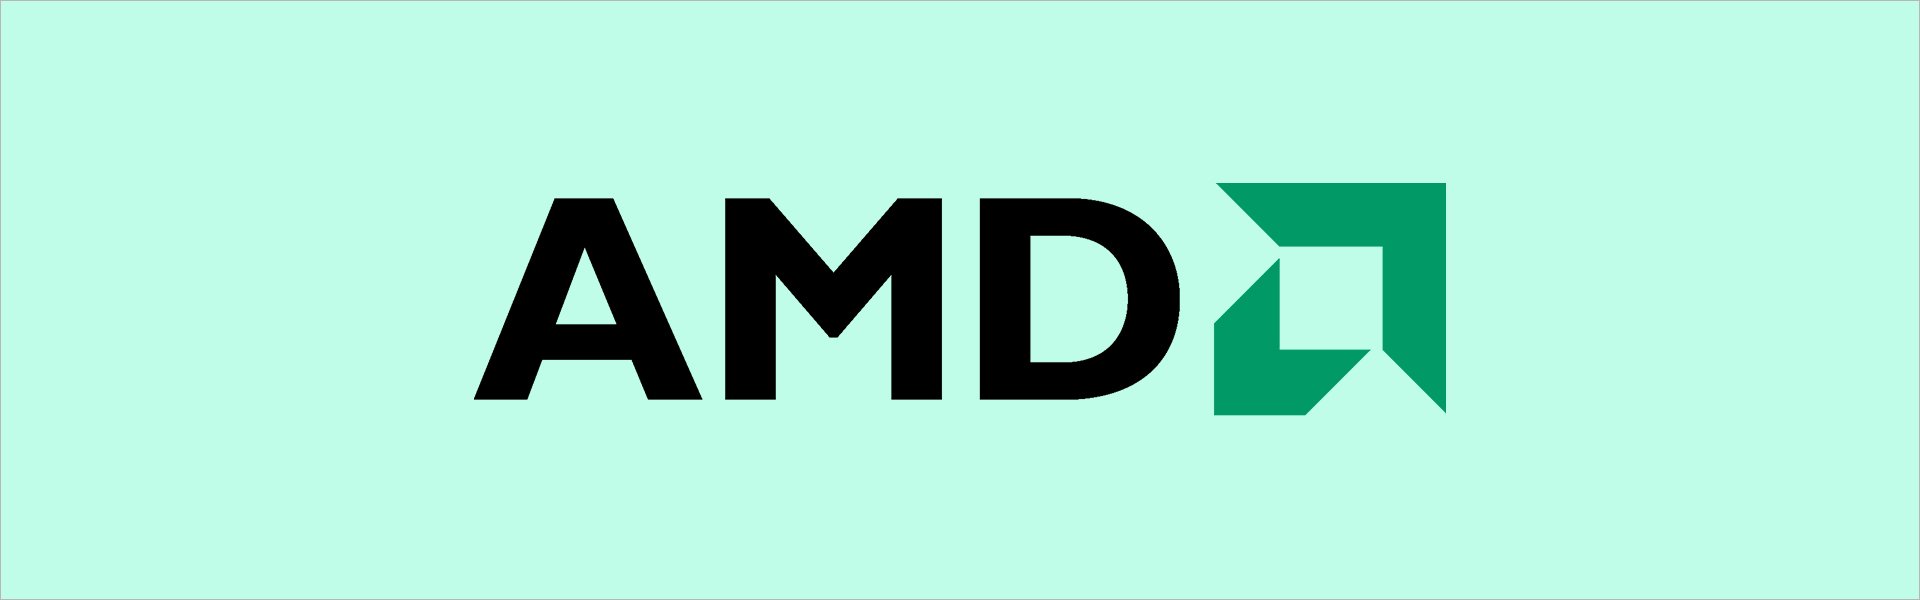 AMD Ryzen 5 3400G AMD